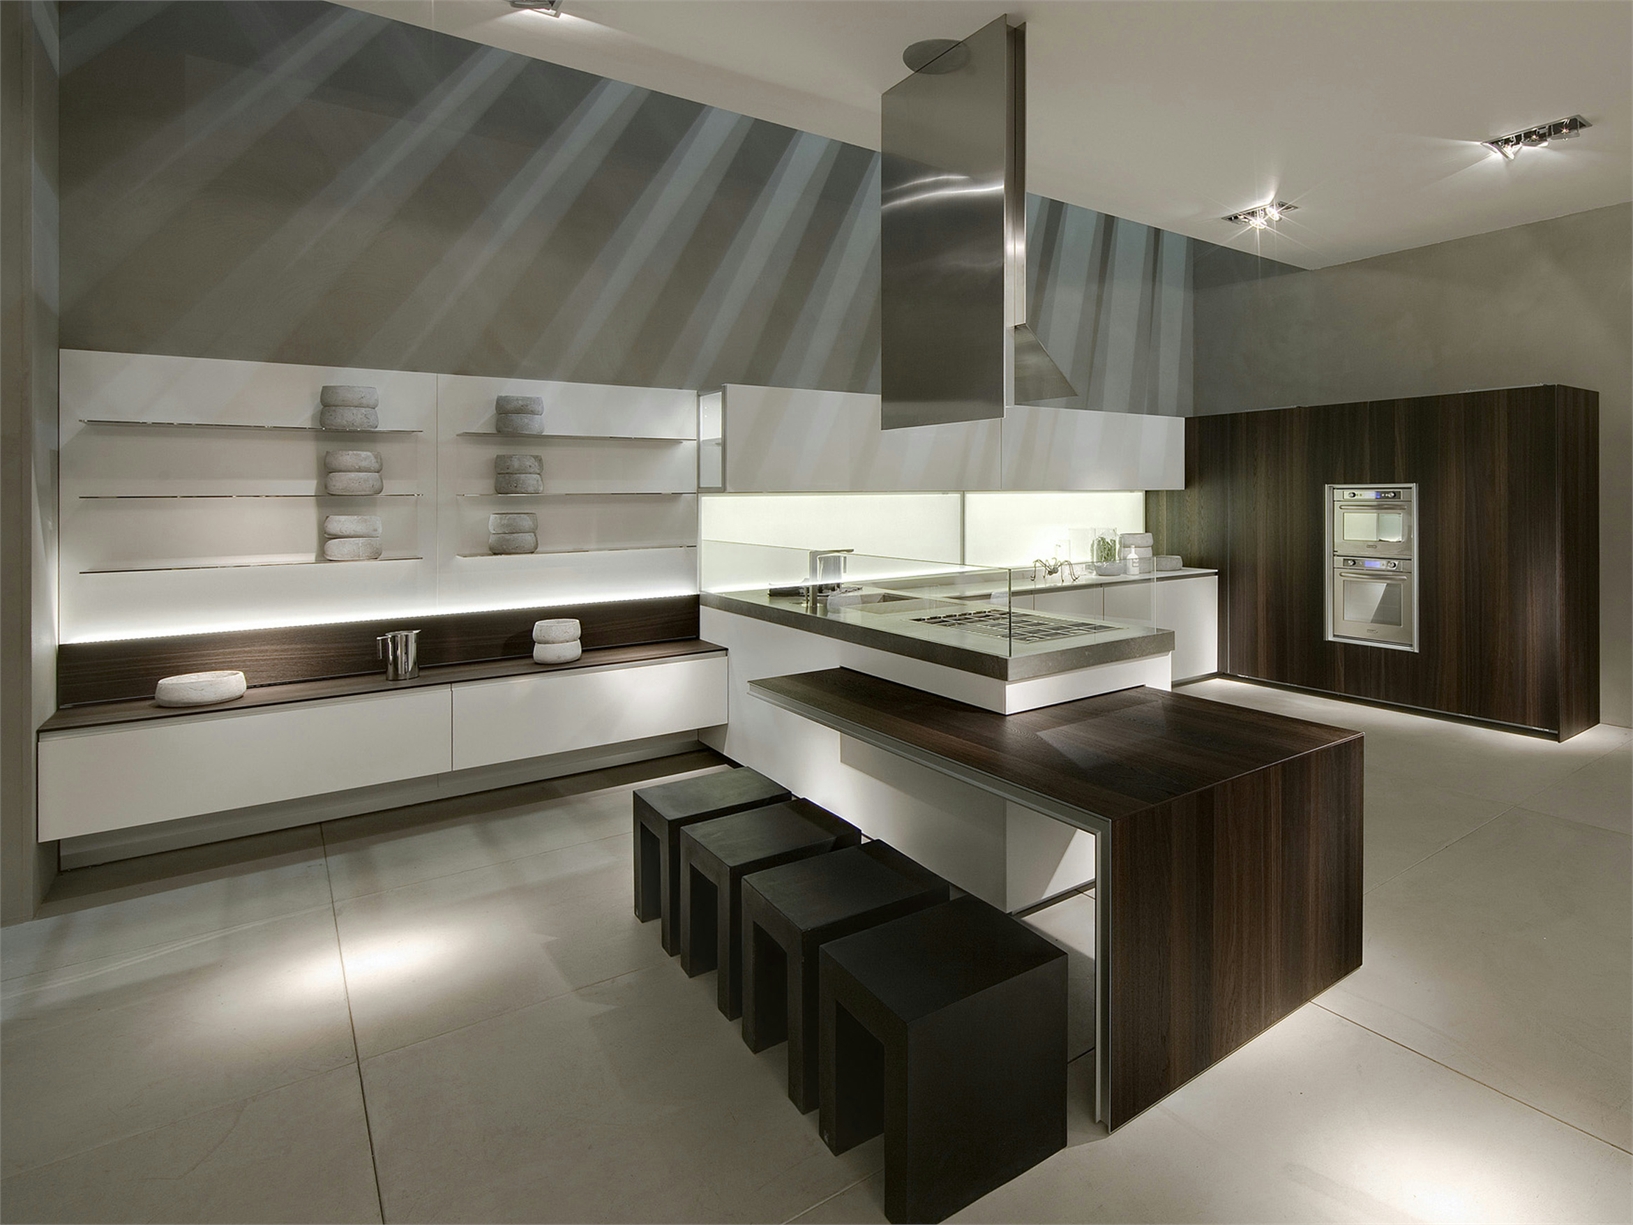 Минималистский дизайн интерьера кухни от Giuseppe Bavuso